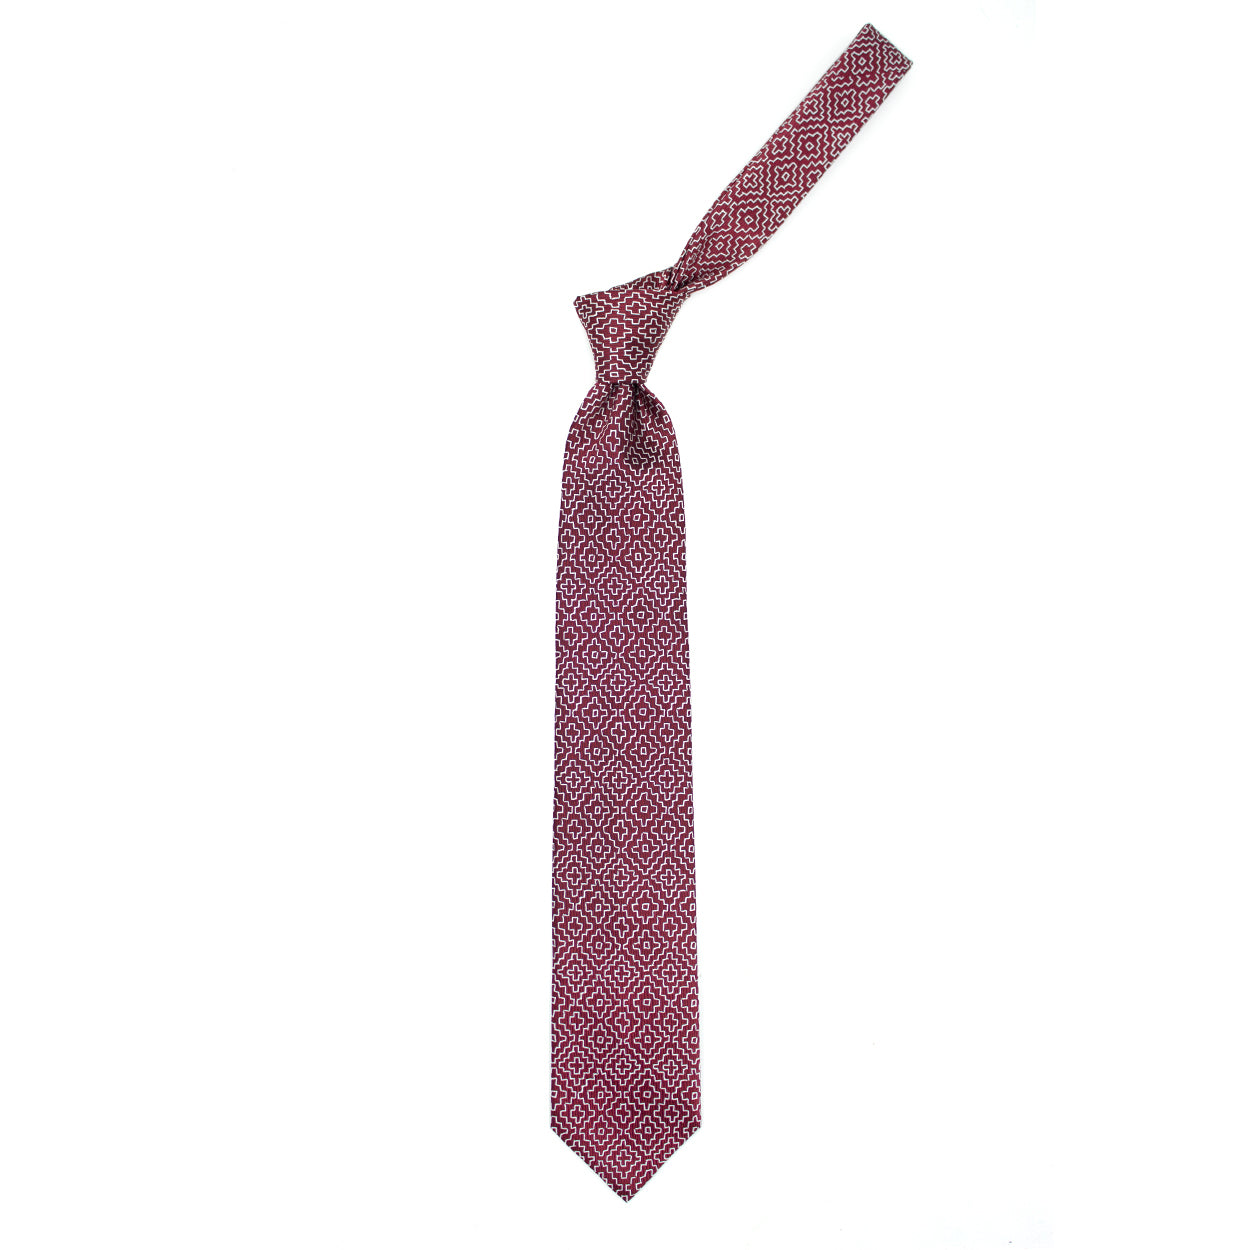 Cravatta rossa con pattern geometrico bianco